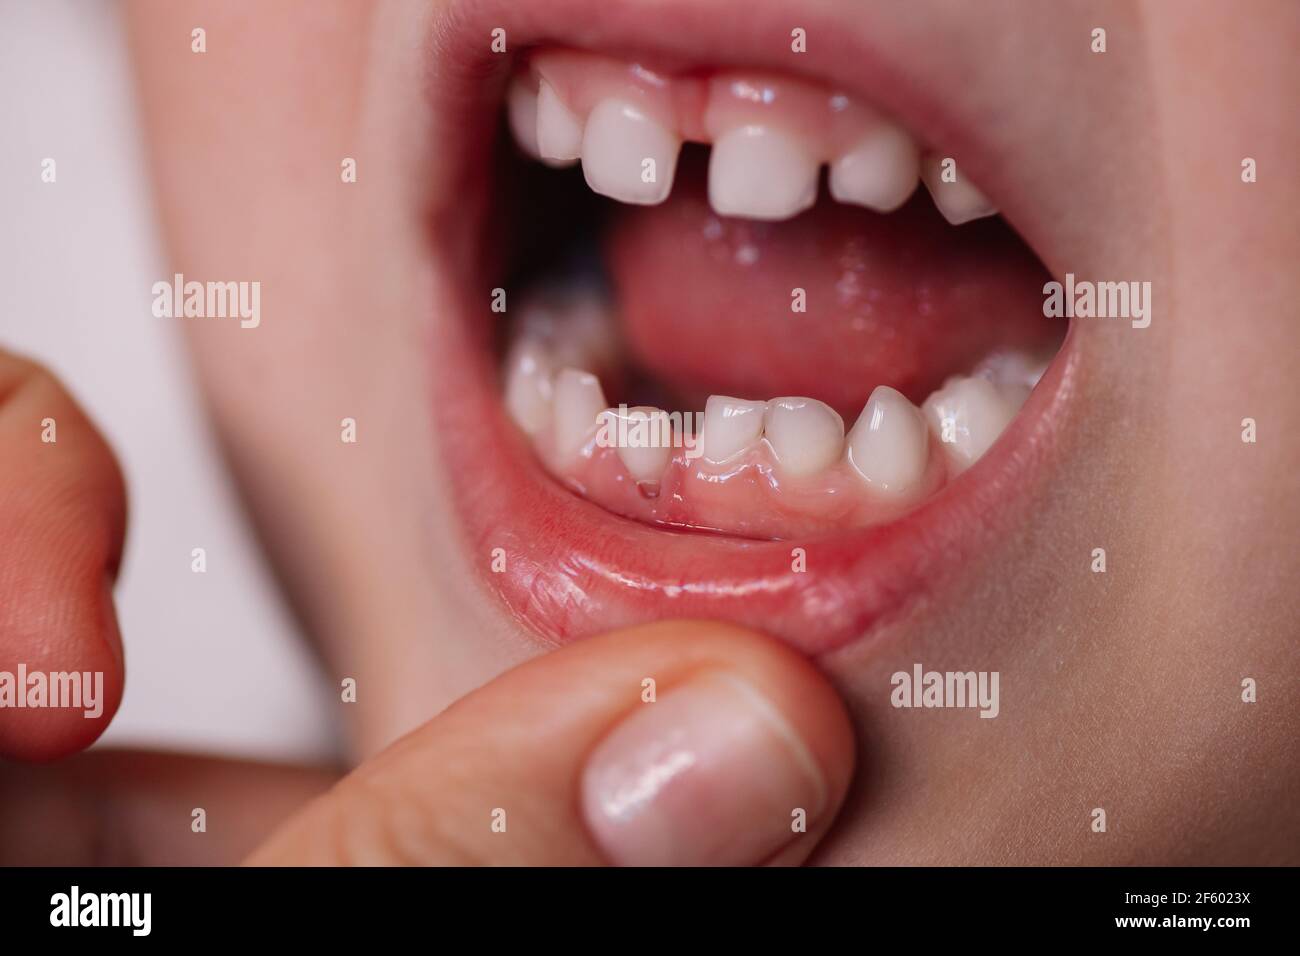 Of tooth poking through gum